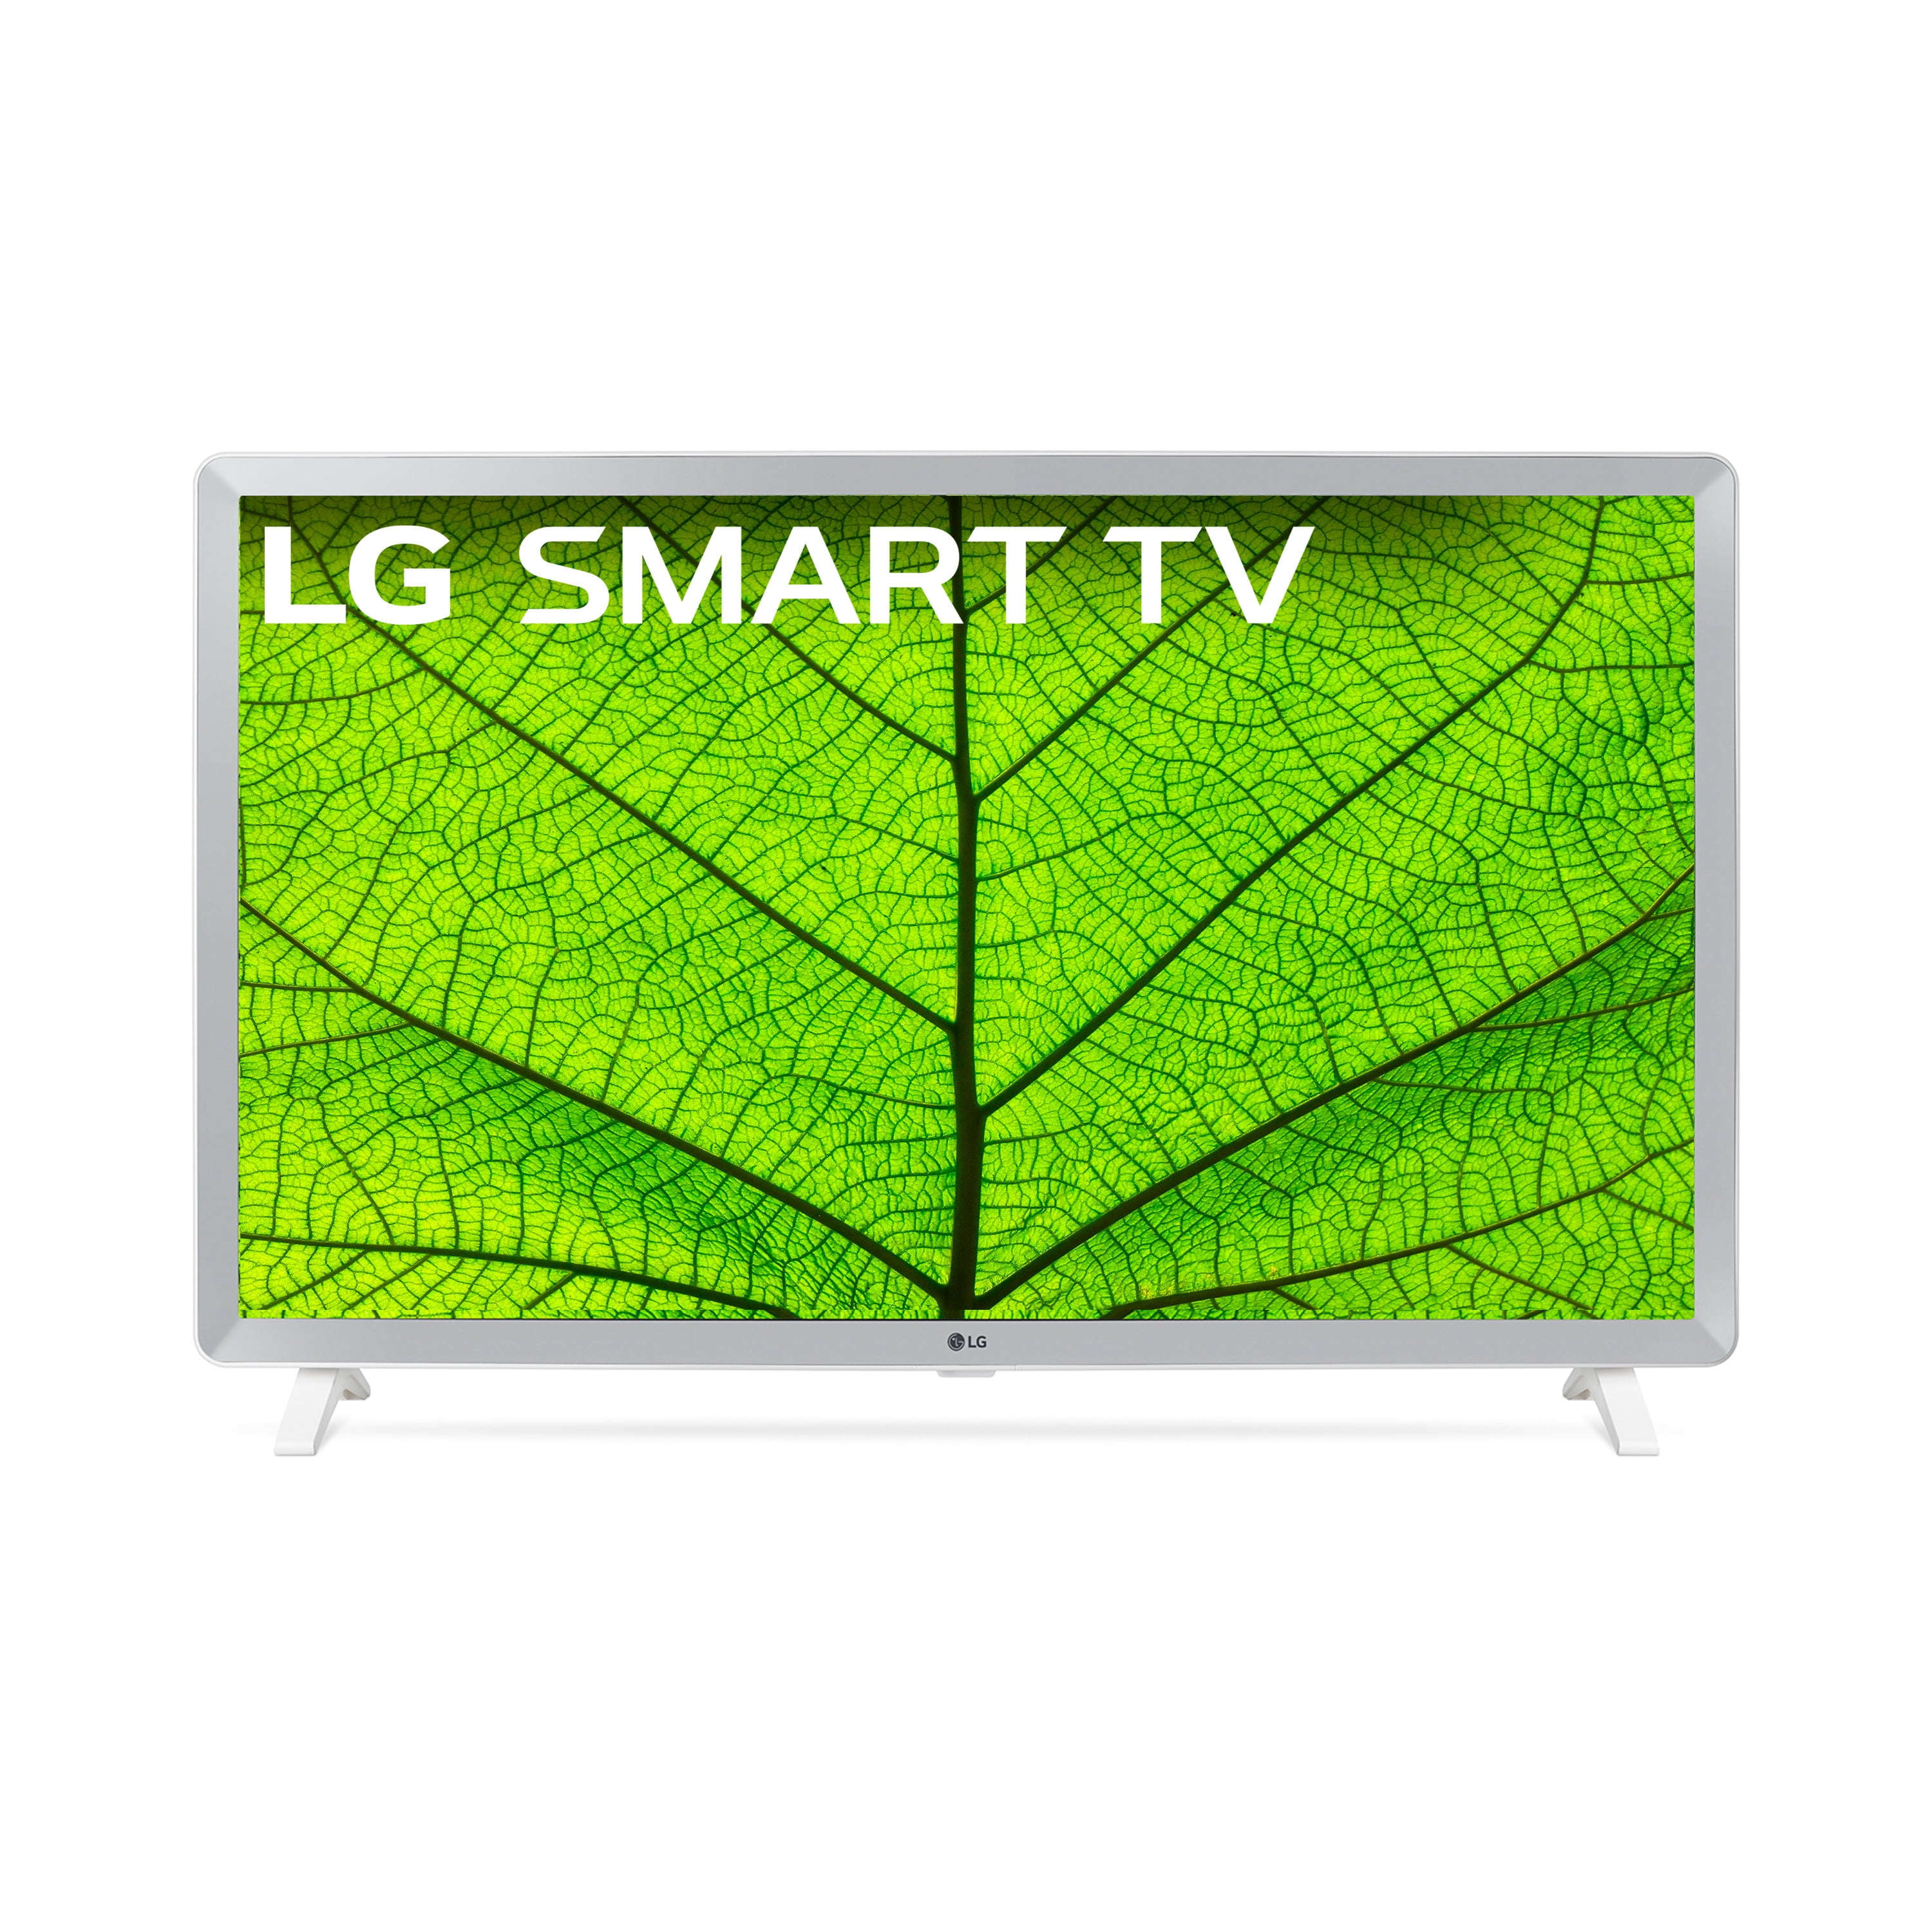 Televisor LG LED SMART 32